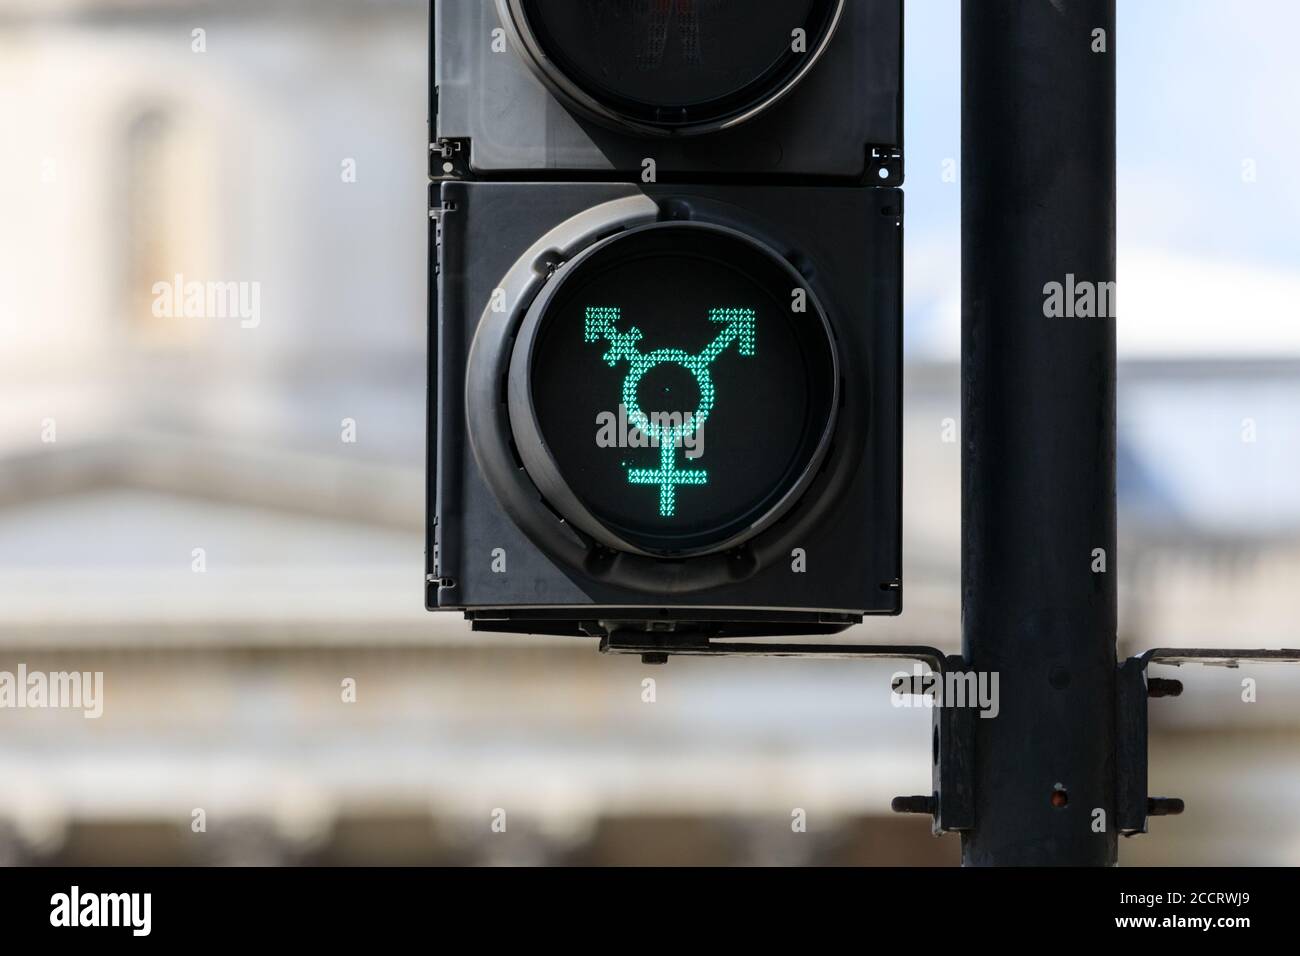 Filtres de signalisation « gay », signe de neutralité de genre introduit pour gay Pride, Trafalgar Square, Londres, Royaume-Uni Banque D'Images